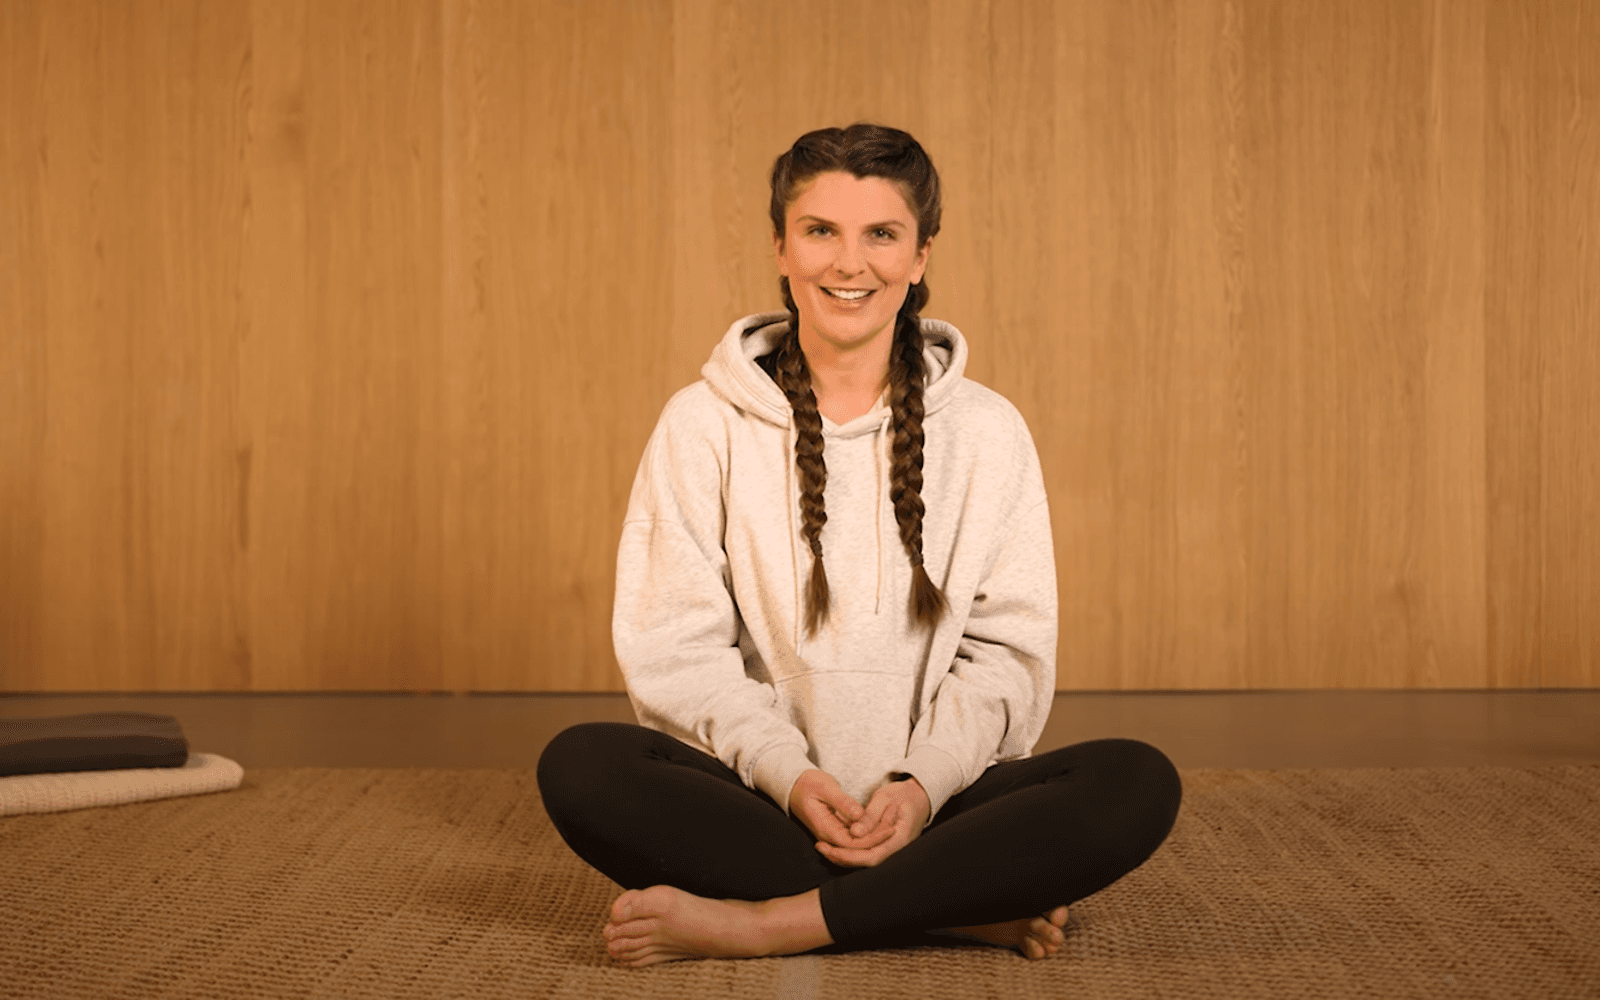 Bild: Yoga-Lehrerin Lena Zimmerman sitzt im Schneidersitz auf dem Boden.